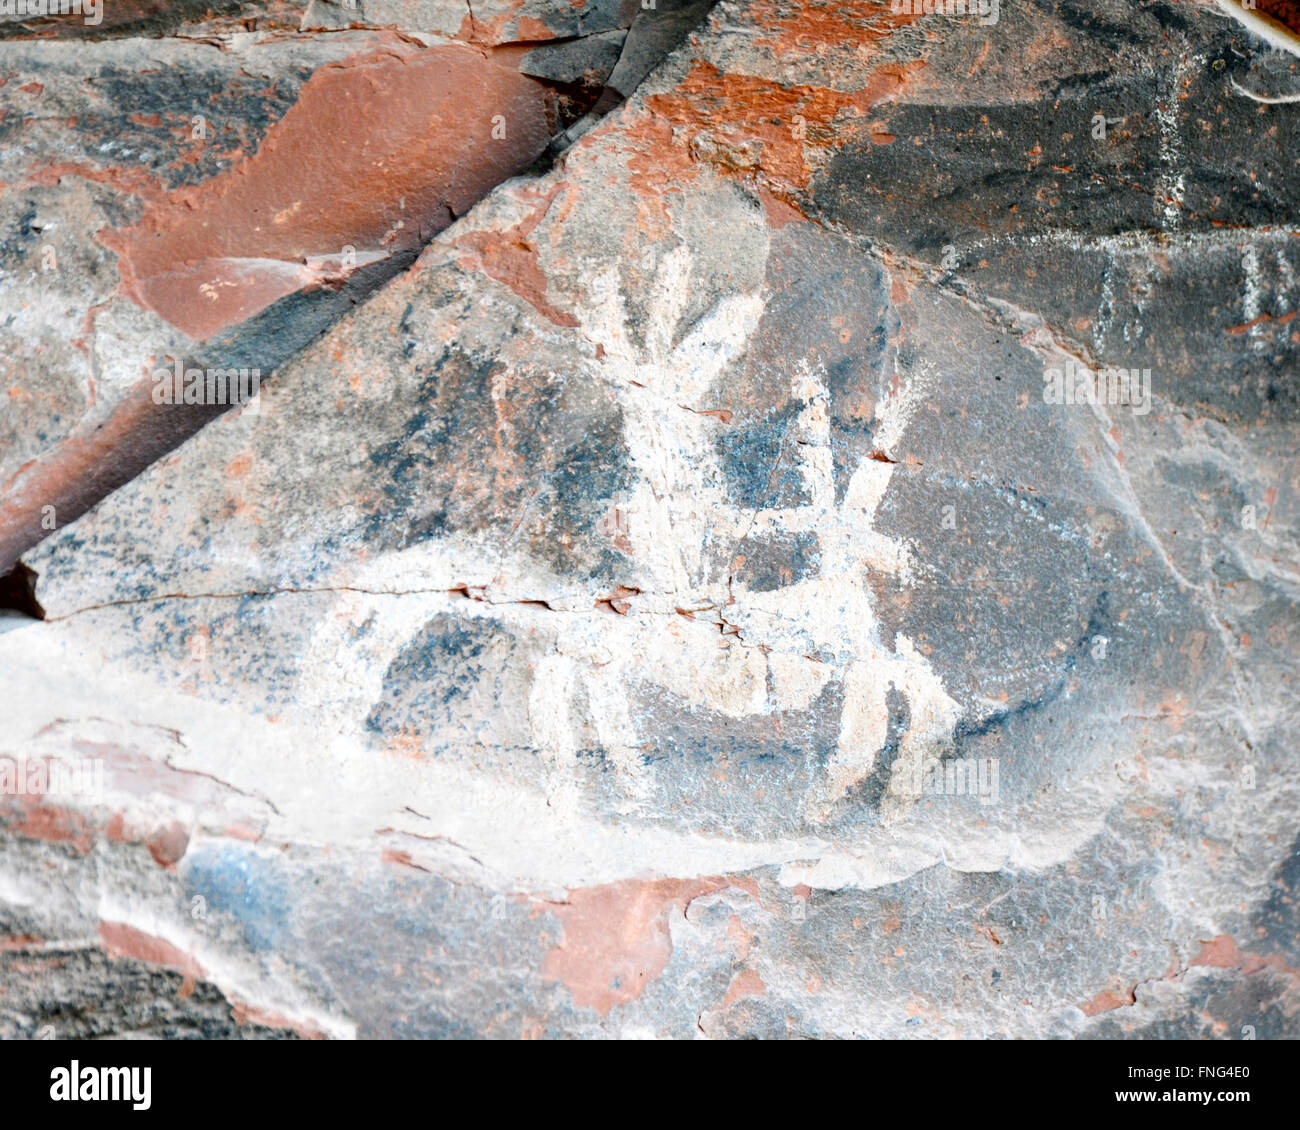 Native American pittogrammi e incisioni rupestri disegnata o dipinta su una roccia, carving immagini preistorica e arte rupestre. Foto Stock